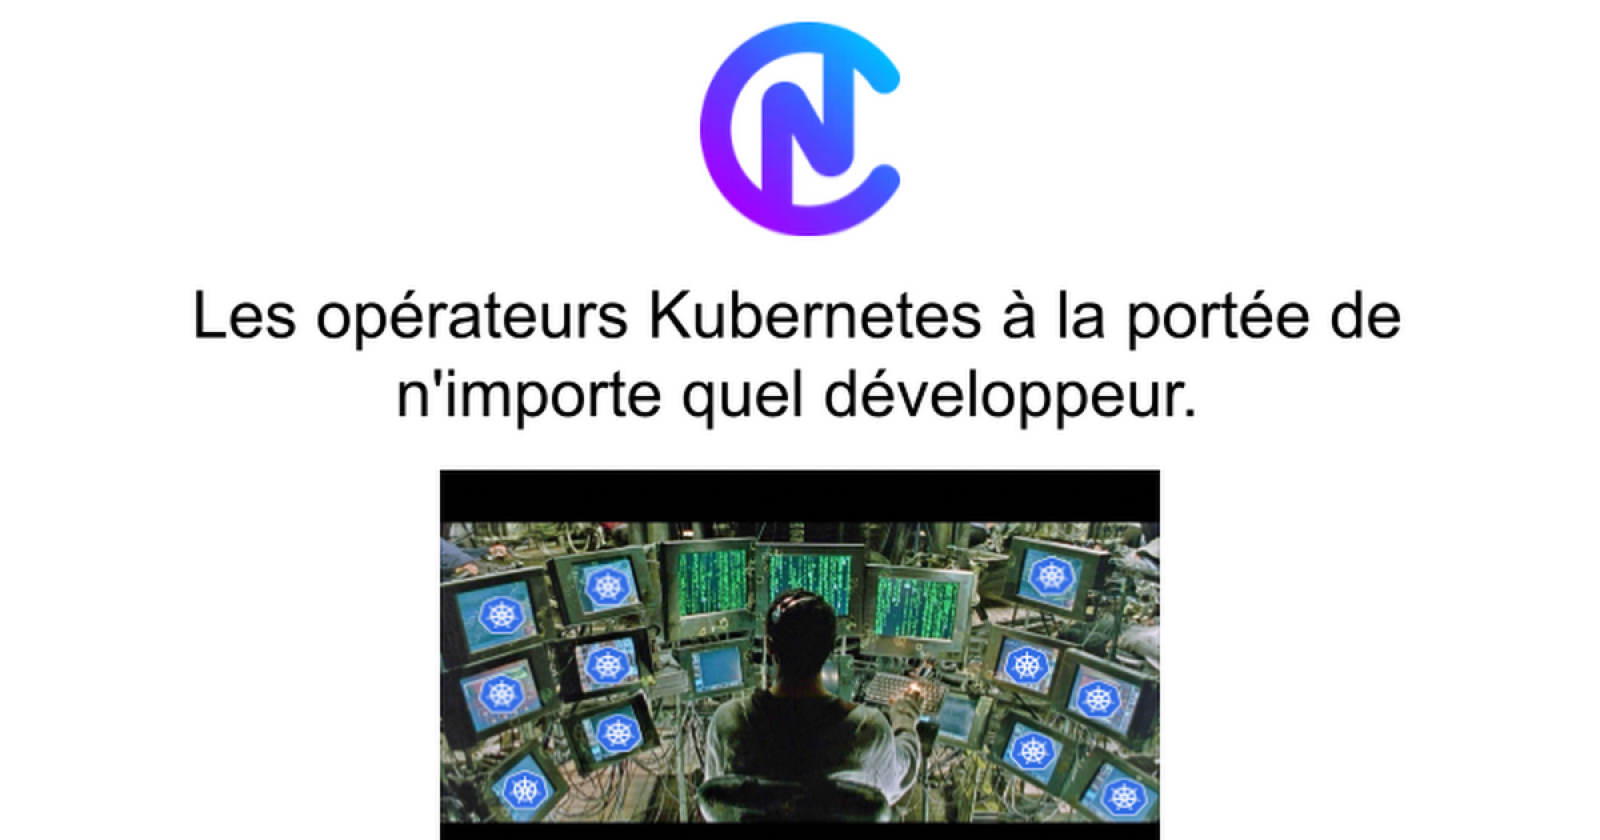 Les opérateurs Kubernetes à la portée de n’importe quel développeur.